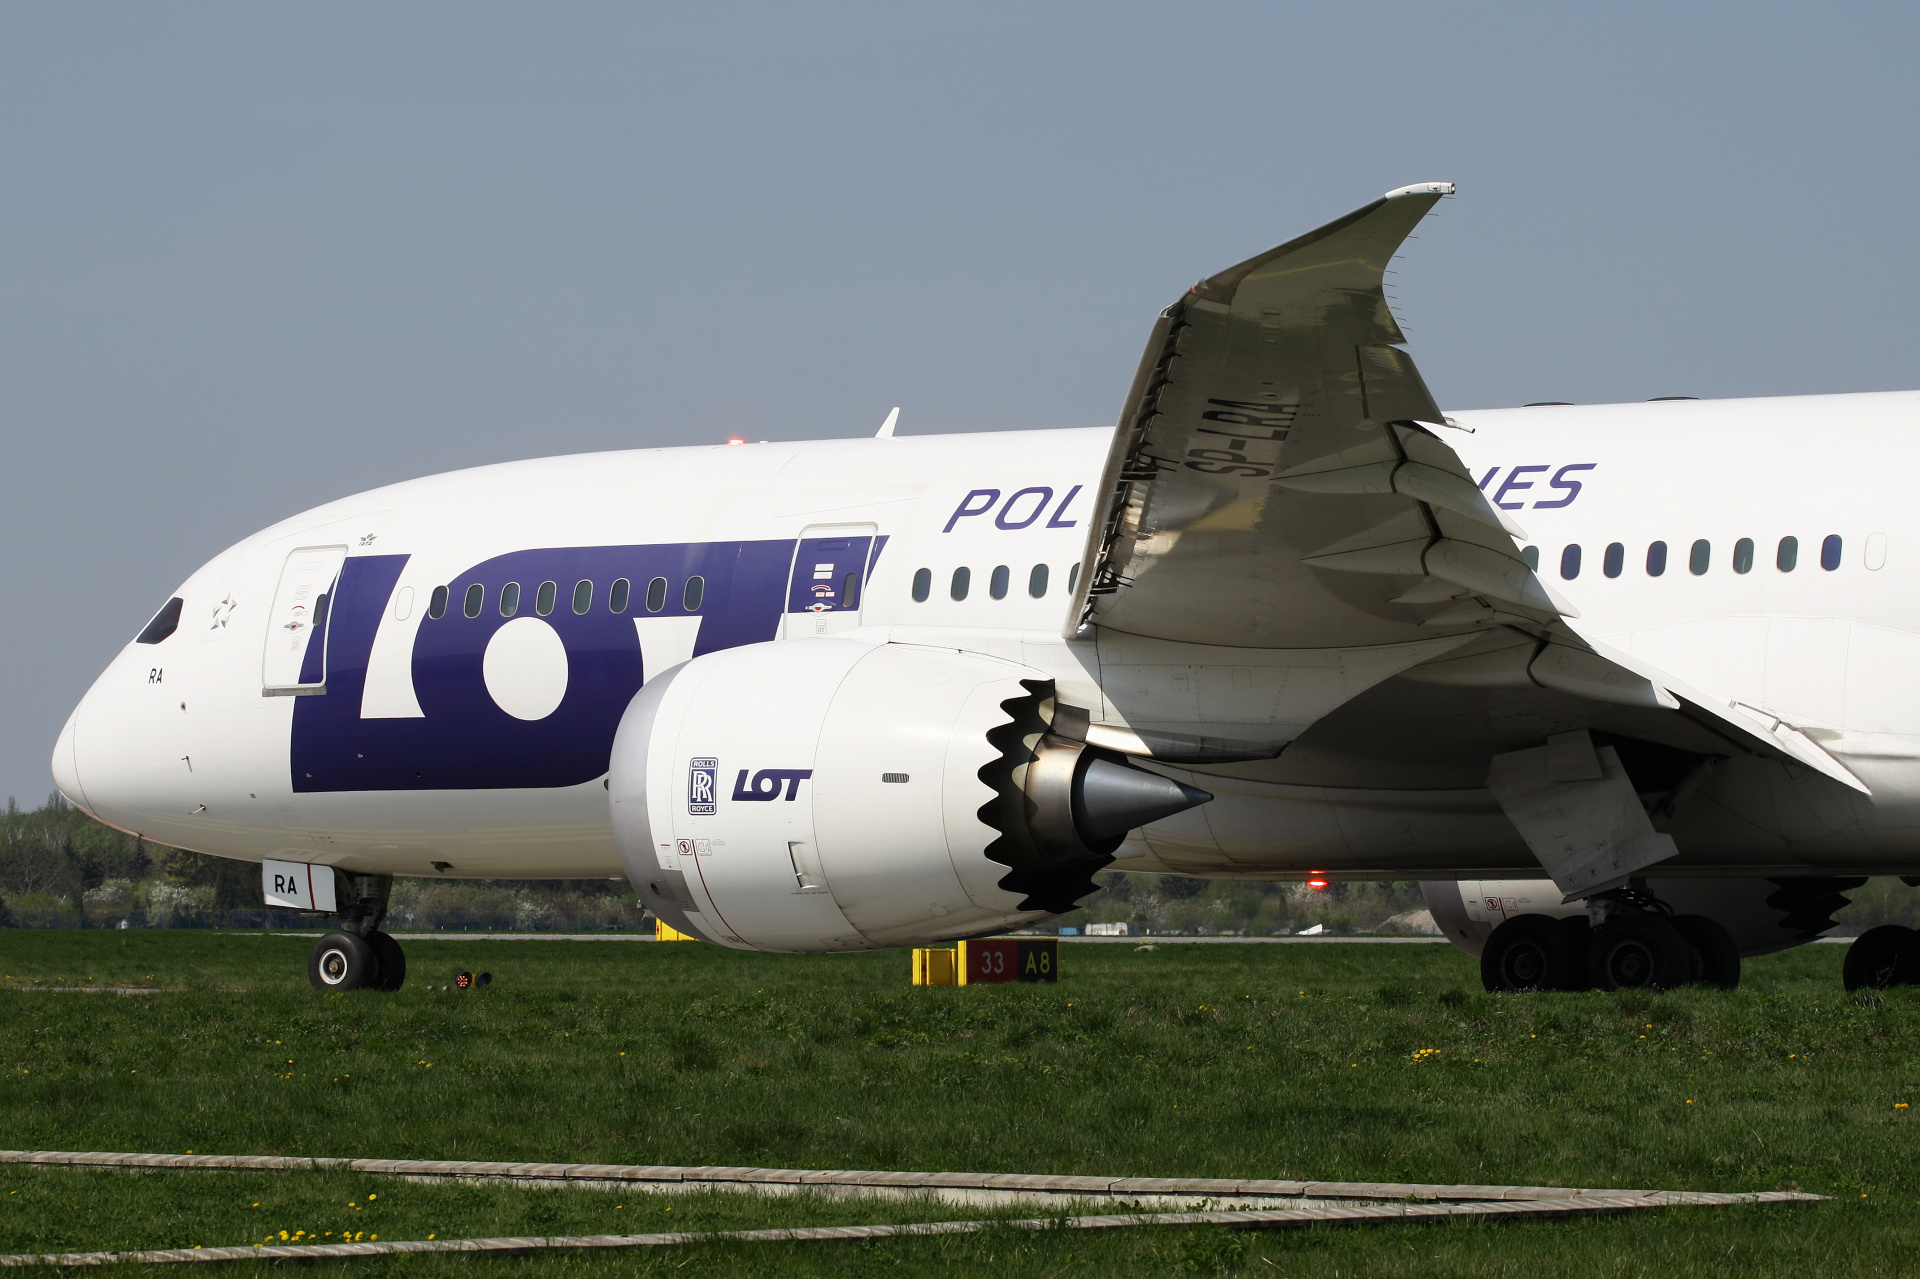 SP-LRA (Samoloty » Spotting na EPWA » Boeing 787-8 Dreamliner » Polskie Linie Lotnicze LOT)